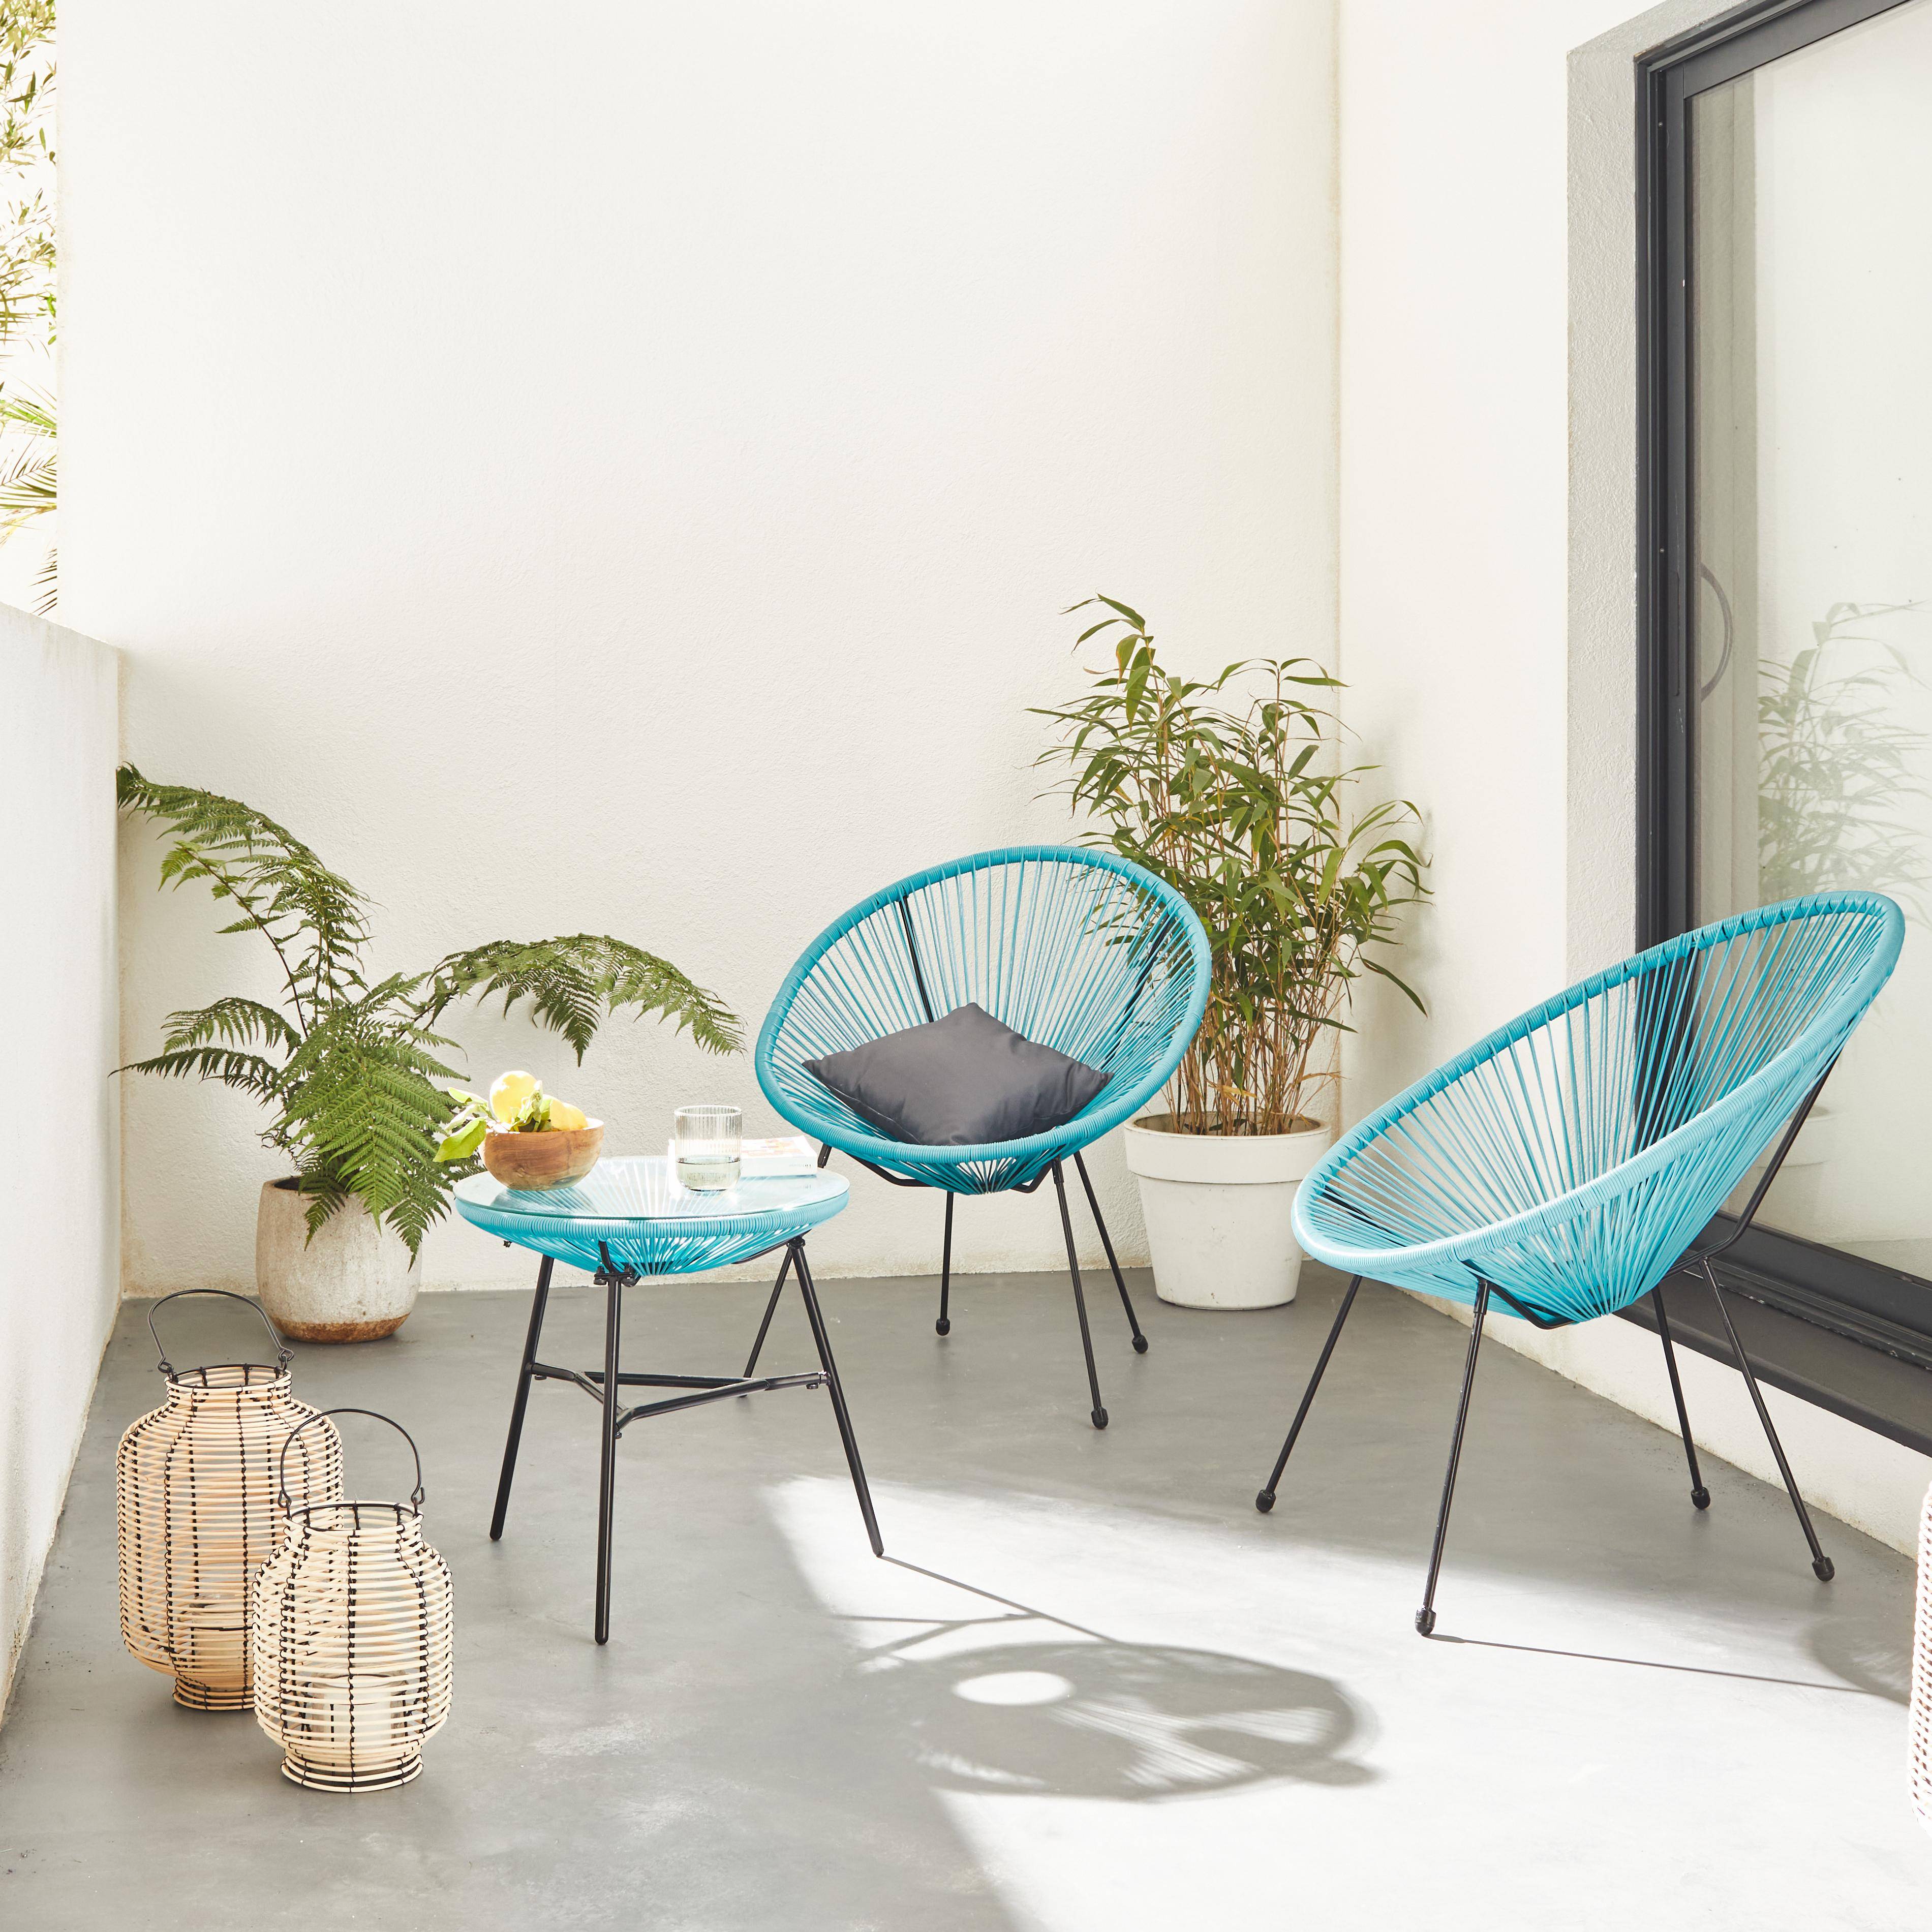 Lot de 2 fauteuils ACAPULCO forme d'oeuf avec table d'appoint - turquoise - Fauteuils 4 pieds design rétro, avec table basse, cordage plastique Photo1